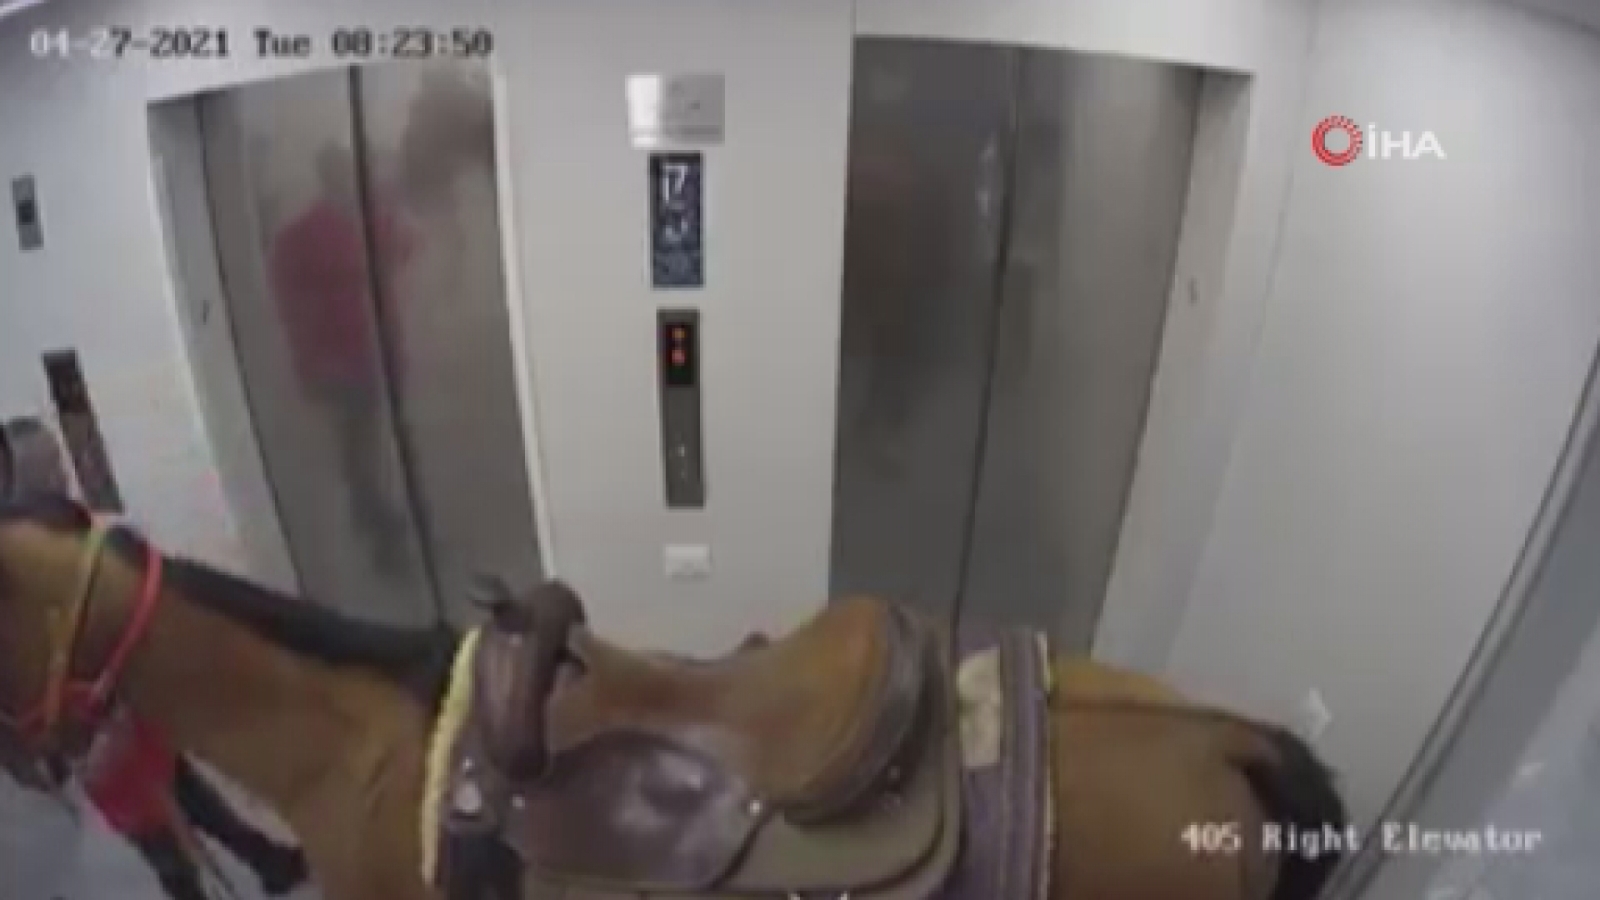 İsrail’de akıl almaz olay: Atını asansörle yukarı çıkarmaya çalıştı